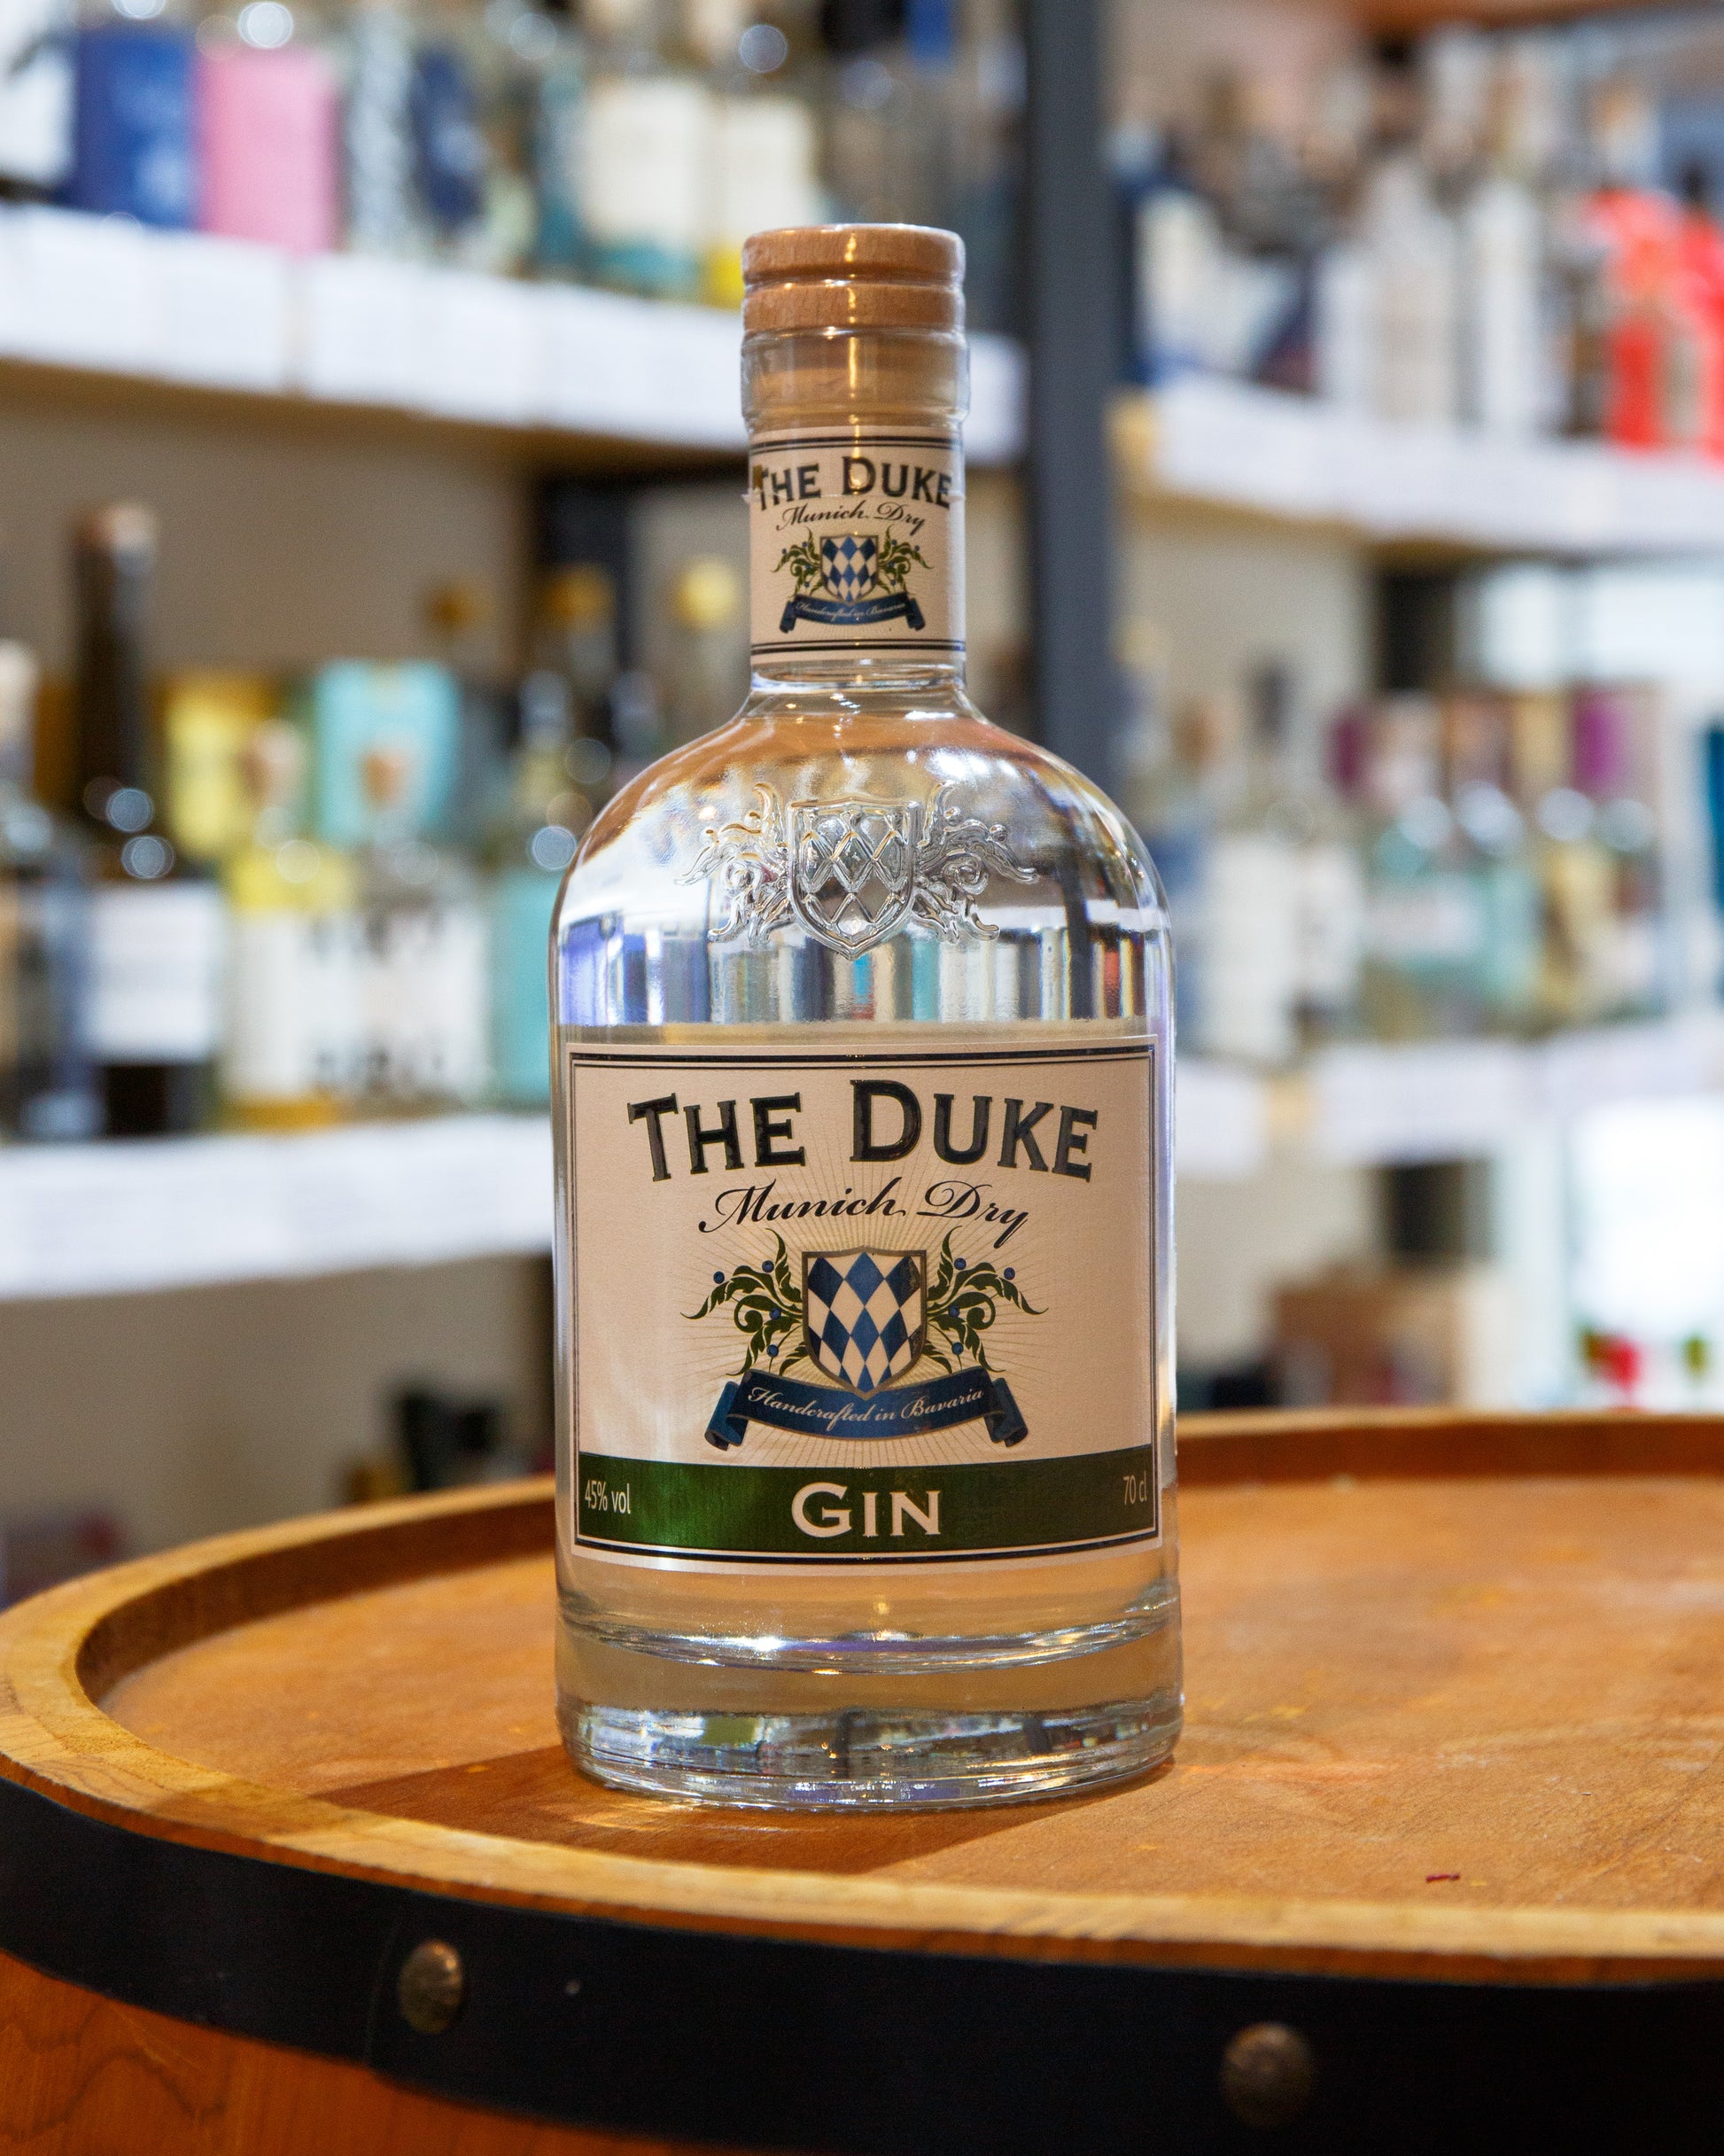 The Duke Munich Dry Gin – Ginsanity